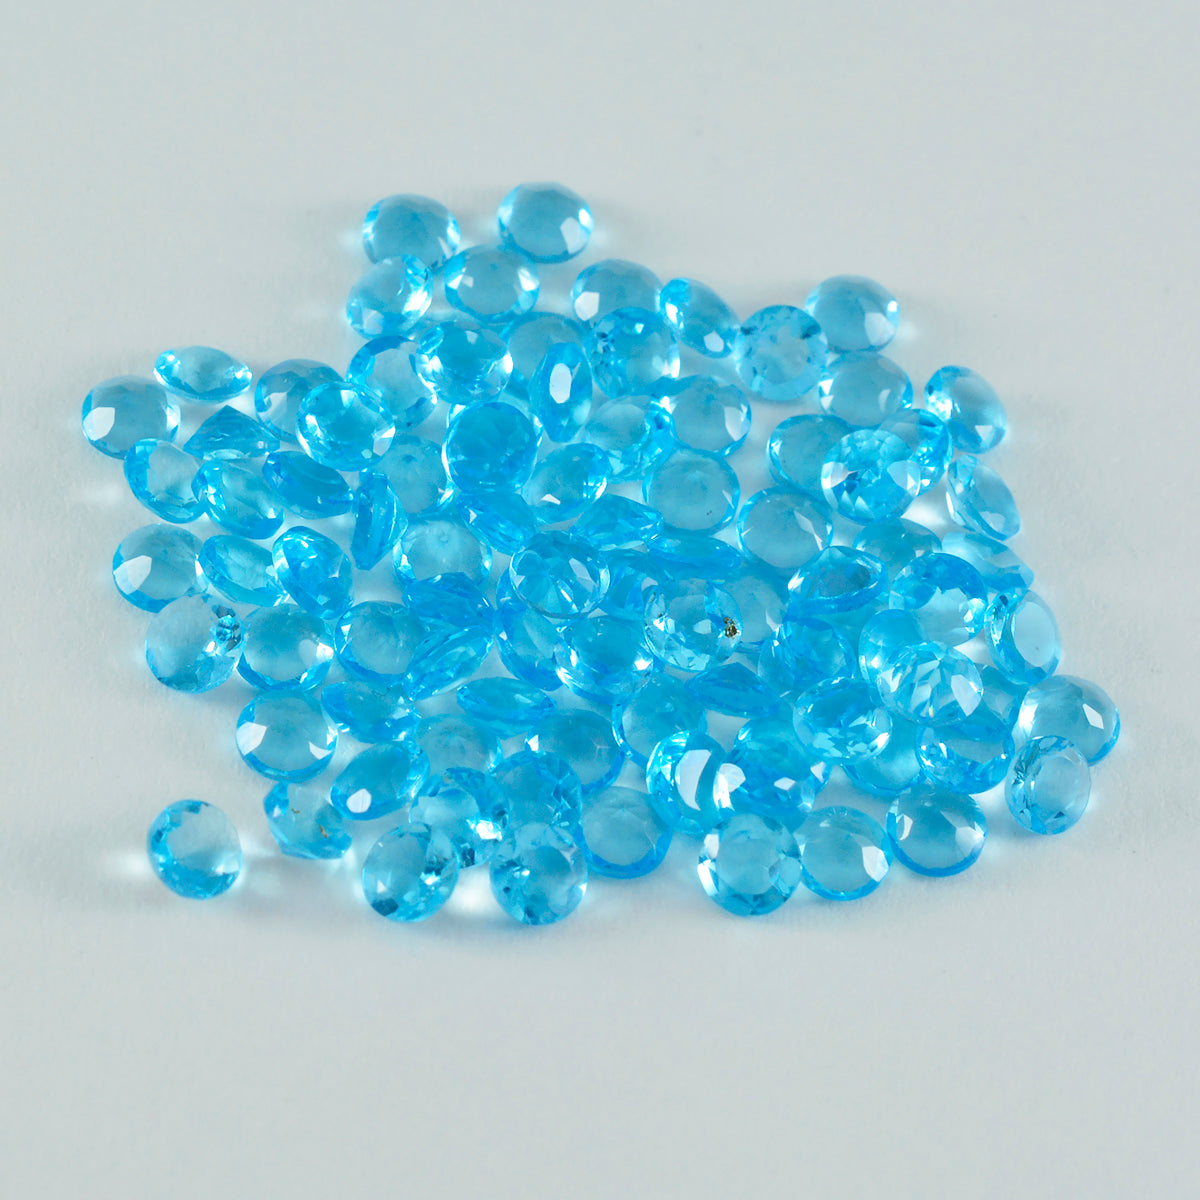 Riyogems 1pc topaze bleue cz facettes 2x2mm forme ronde pierres précieuses de merveilleuse qualité